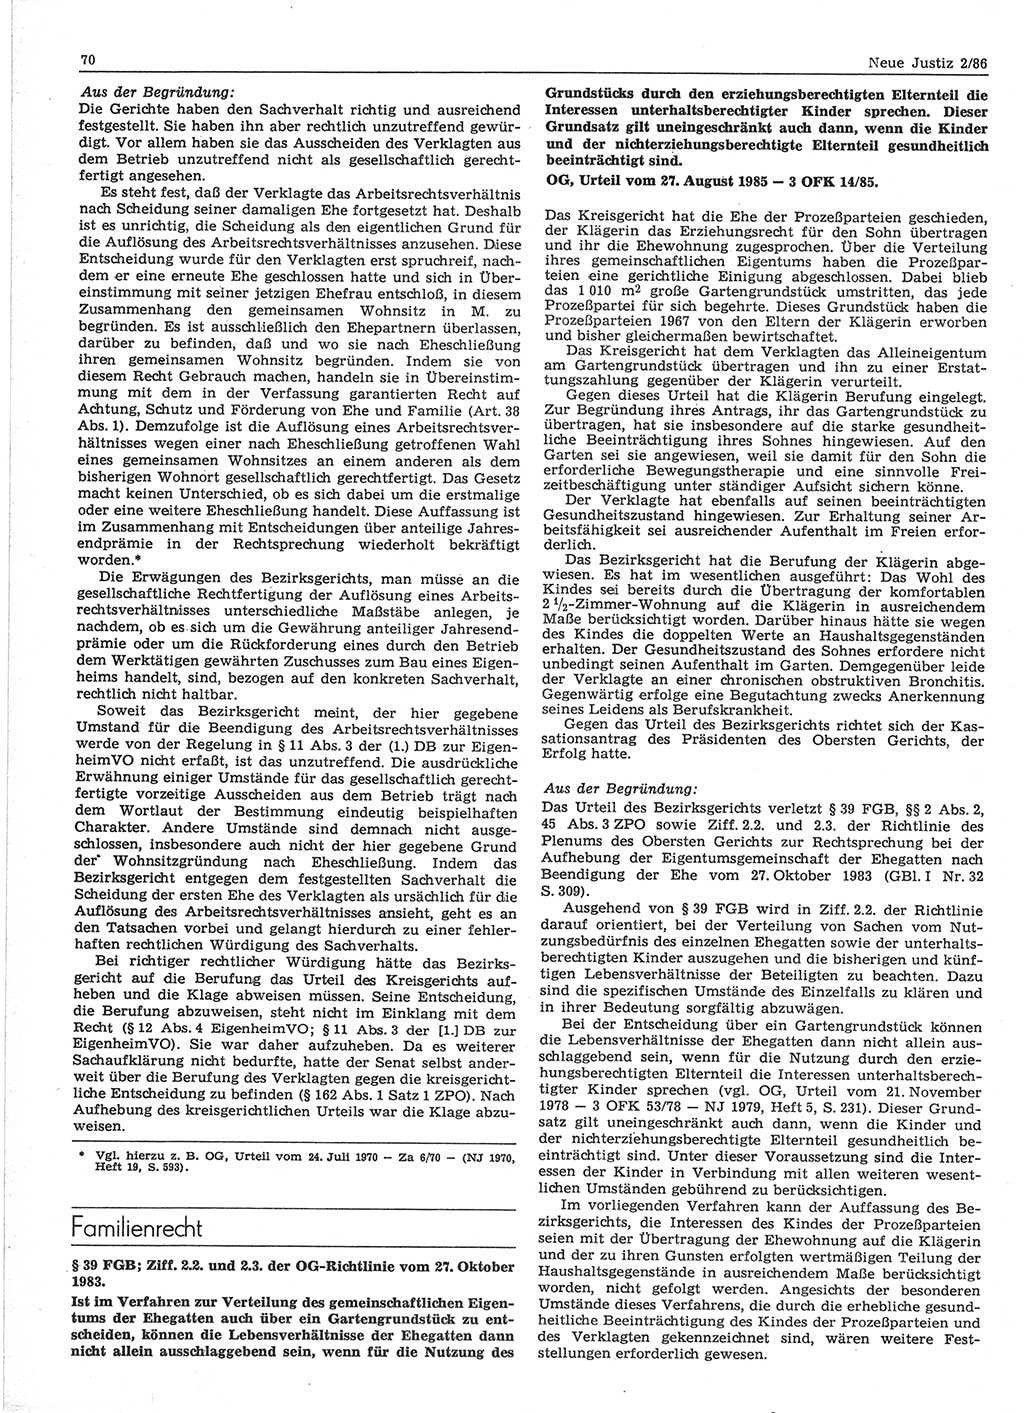 Neue Justiz (NJ), Zeitschrift für sozialistisches Recht und Gesetzlichkeit [Deutsche Demokratische Republik (DDR)], 40. Jahrgang 1986, Seite 70 (NJ DDR 1986, S. 70)